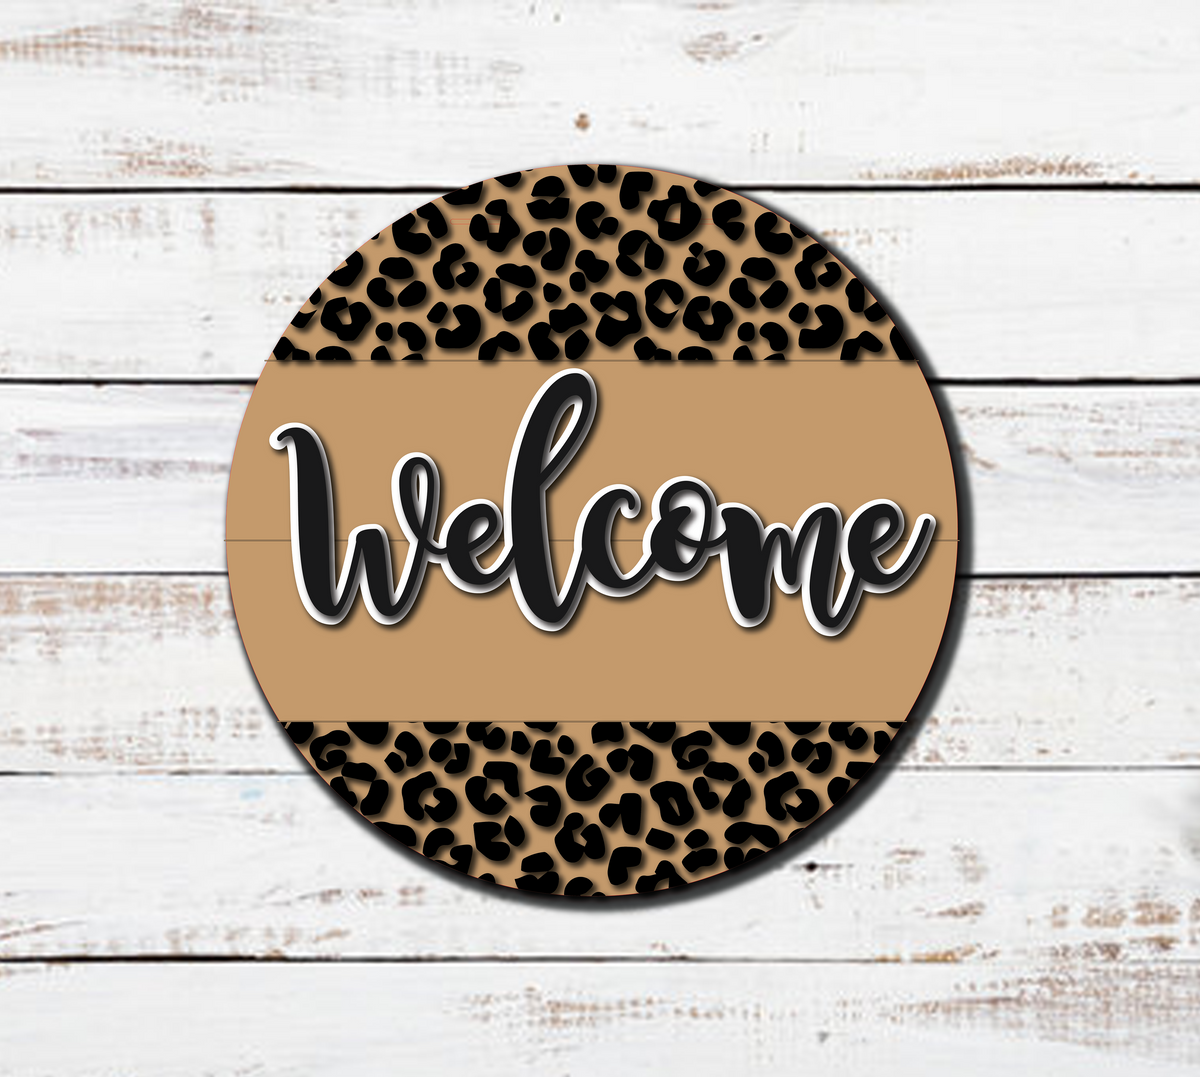 Cheetah Print Welcome-ish Floral Door Hanger